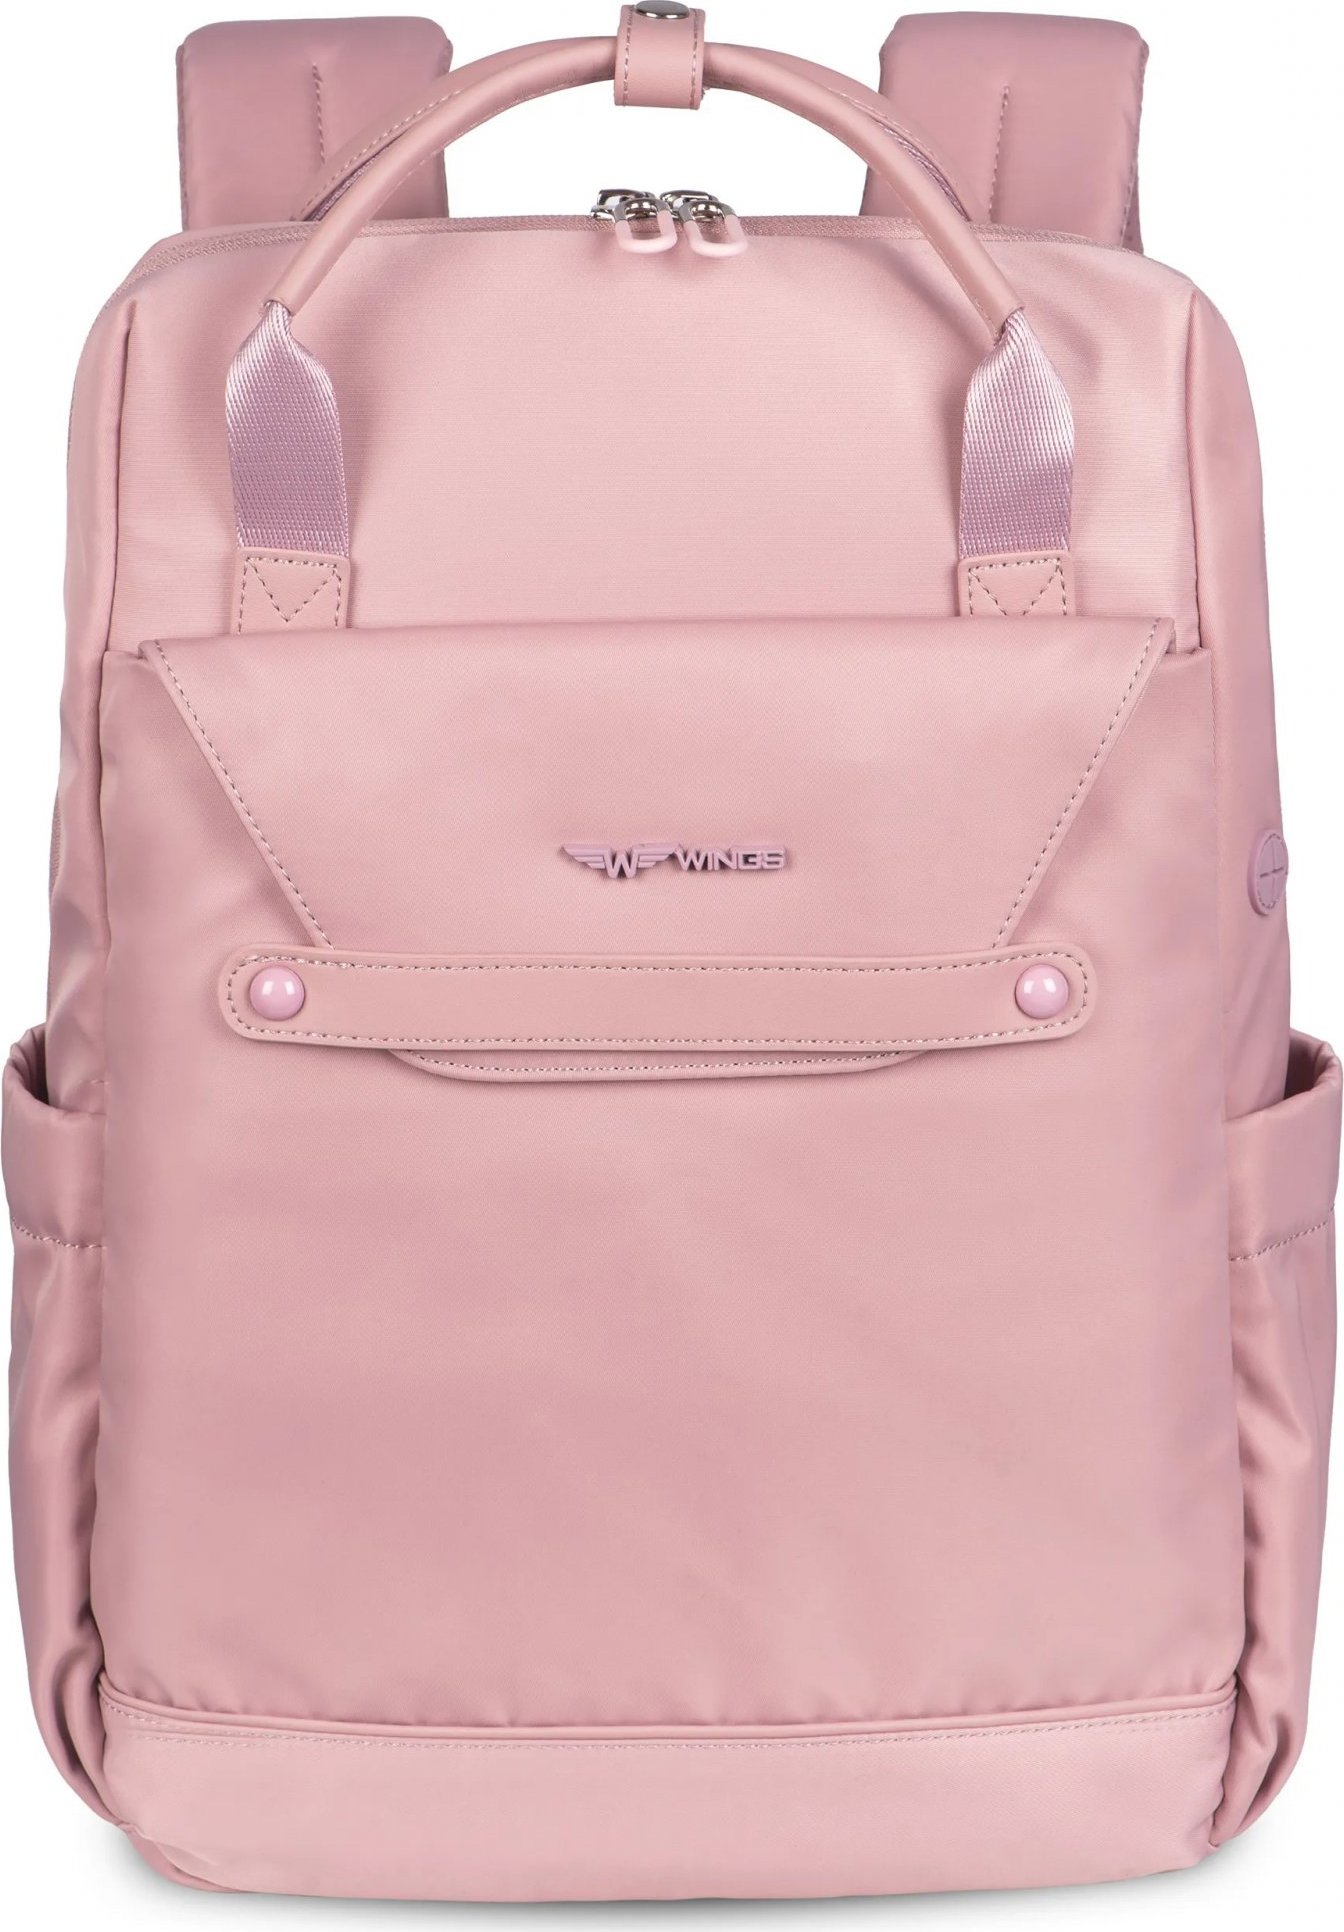 Růžový dámský multifunkční batoh Wings Skylark SKY003, Wings women's backpack, PINK Velikost: ONE SIZE